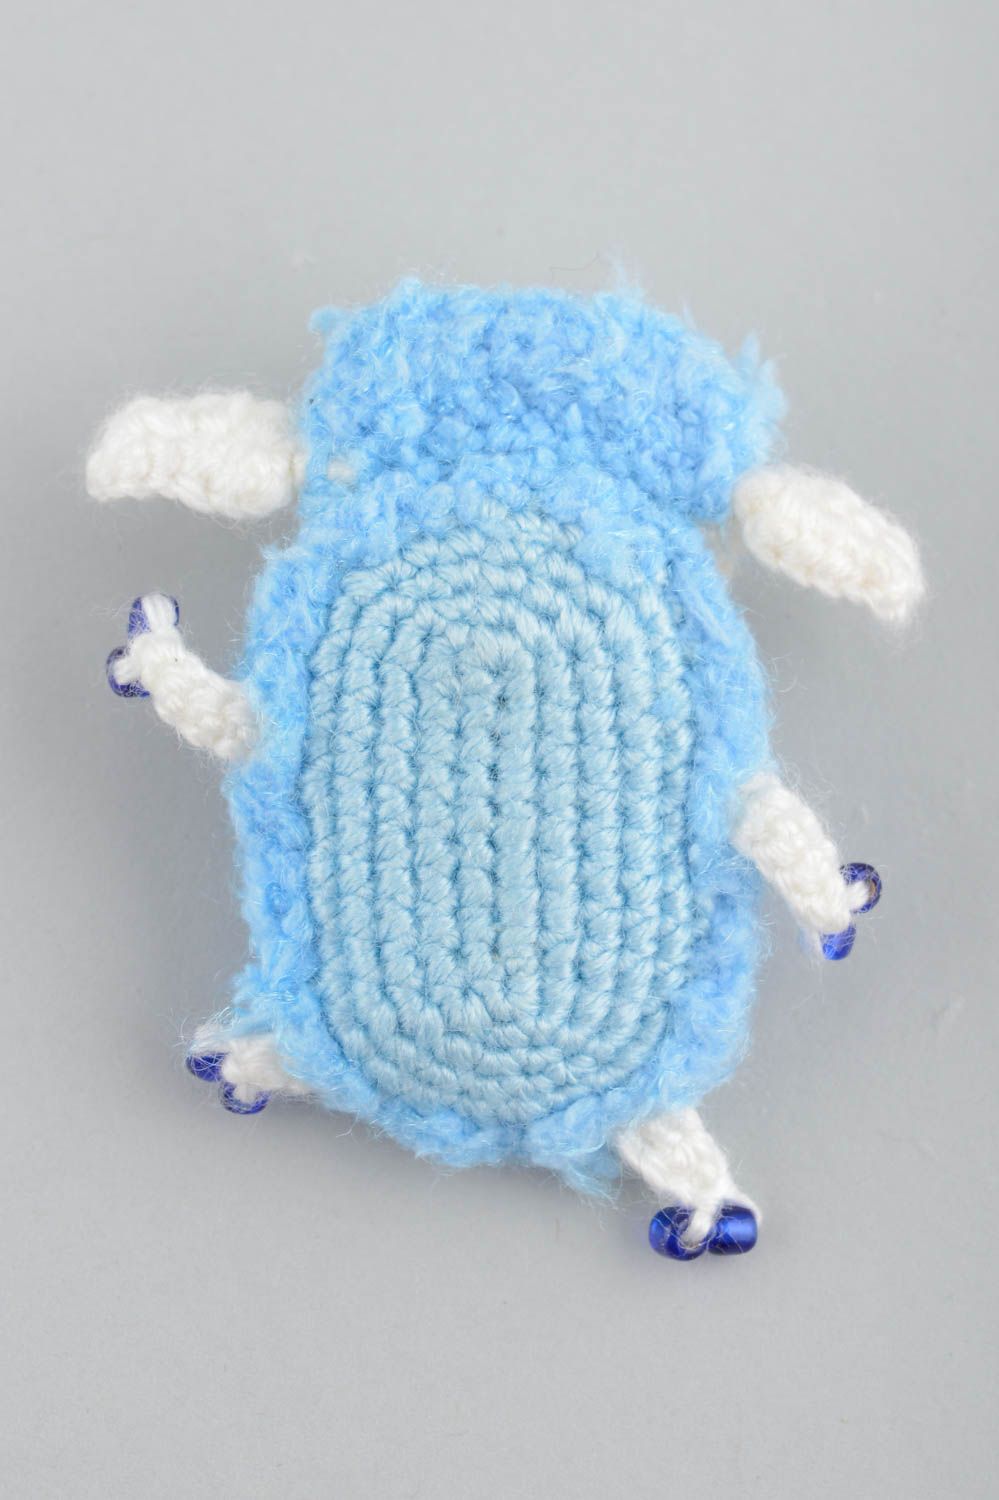 Aimant frigo artisanal jouet miniature tricoté bleu fait main décoration Brebis photo 2